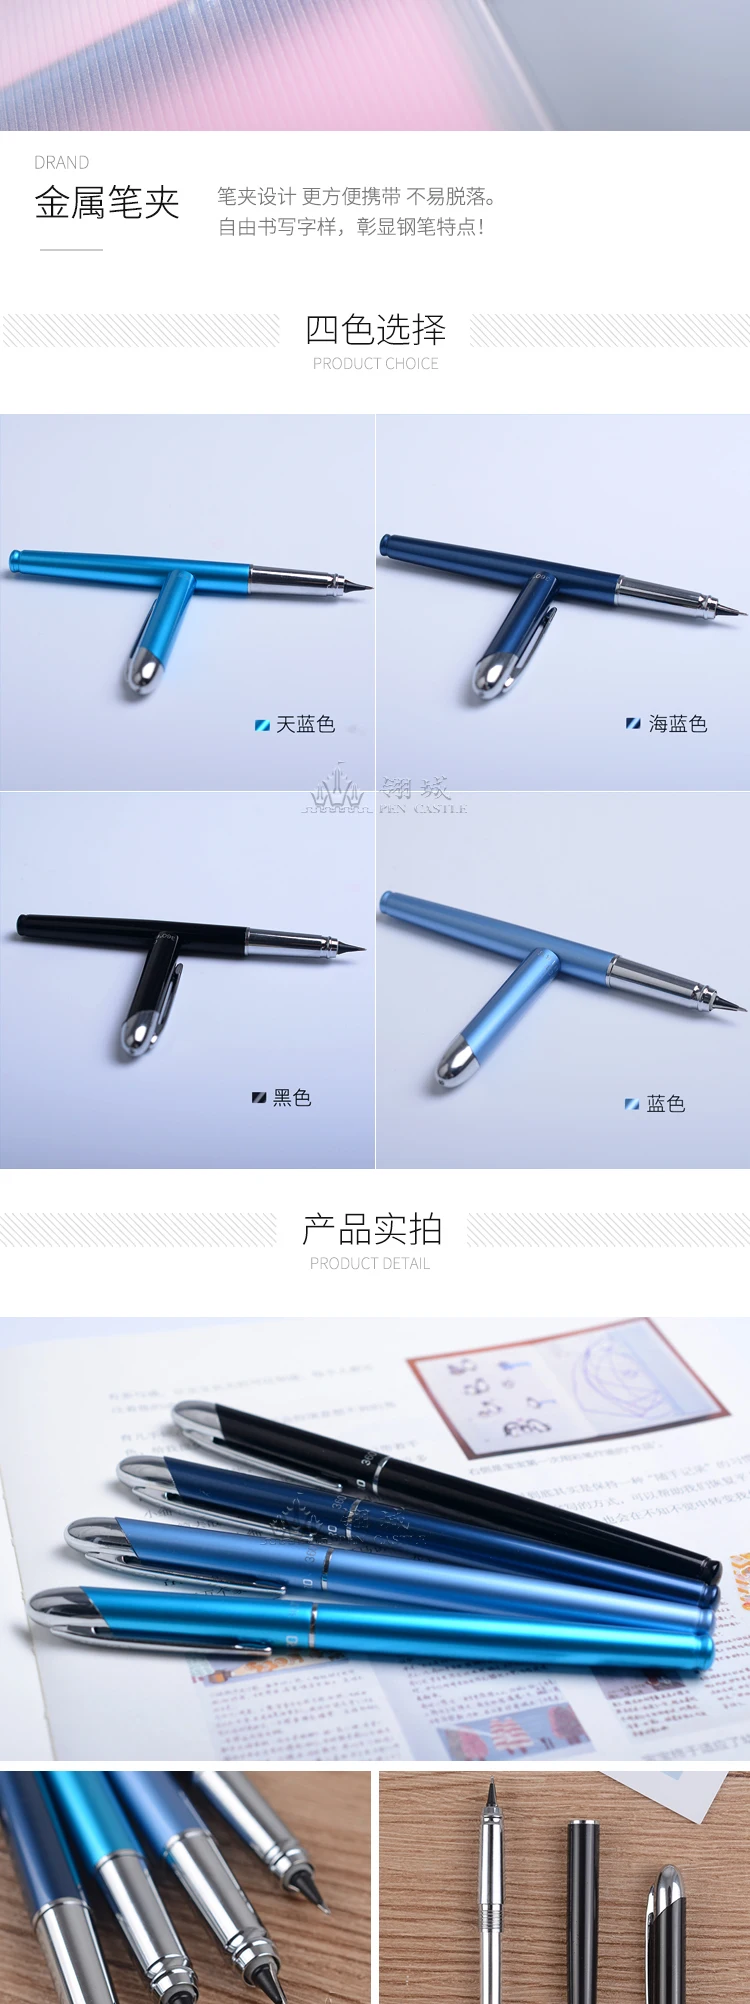 Ручка для левой руки, ручка для левой руки, ручка с бесплатной ручкой 360 градусов